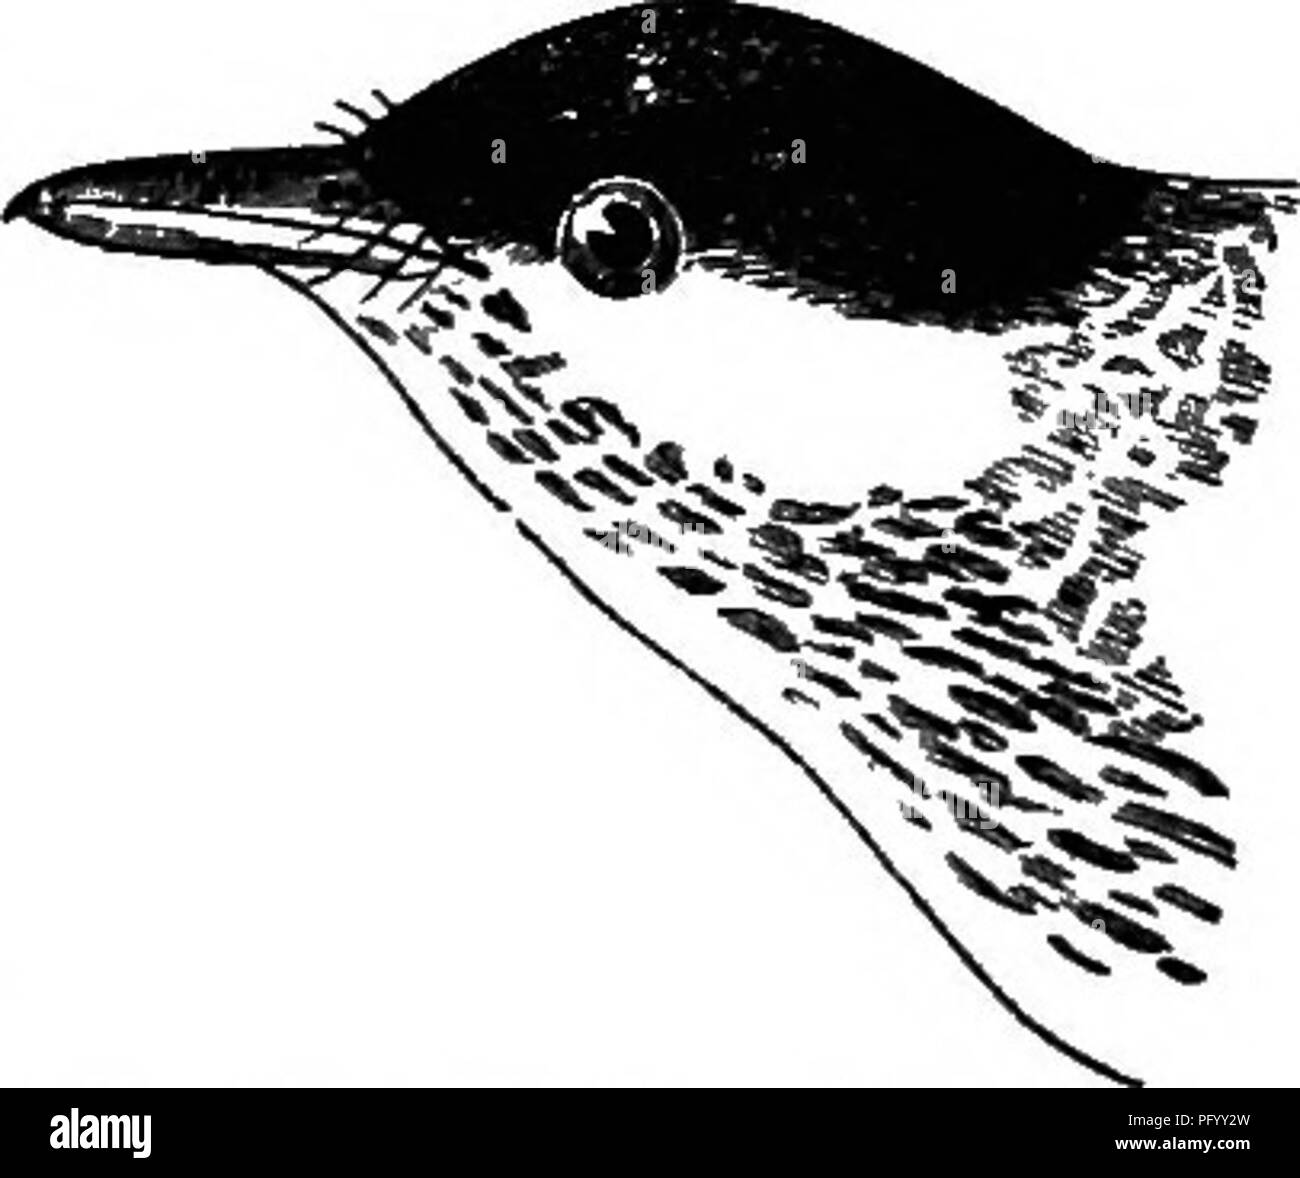 . Gli uccelli del Colorado valley ... scientifico e popolare informazioni riguardanti North American ornitologia;. Gli uccelli. 288 SINONIMIA DI DENDECECA STRIATA nero-poll TVarbler Bendrseca Mnsclcapa striata striata, Forst Philos. Trans. IxiL 1772,406,4-38, n. 31 (Severn Eiver).-(JM. S. N. i. 1788, 930, n. 7 (da Forster; qaotea MiJK anche. IlL pL 15, A. B.).-listello. 10. ii. 1790, 481, n. 56 (da Forster; qui&GT;teB alao Striped Flycatcher, Penn. A. Z. 11 390 e listello. SjD. ii. pt. i. 349).-Turt. Sif. i. 1806,571 Steph. Gen. ZooL x. 1817,370. UotsclUa striata, gm. SX. 1. 1788, 97fi, u. 194 (nero-poU W Foto Stock